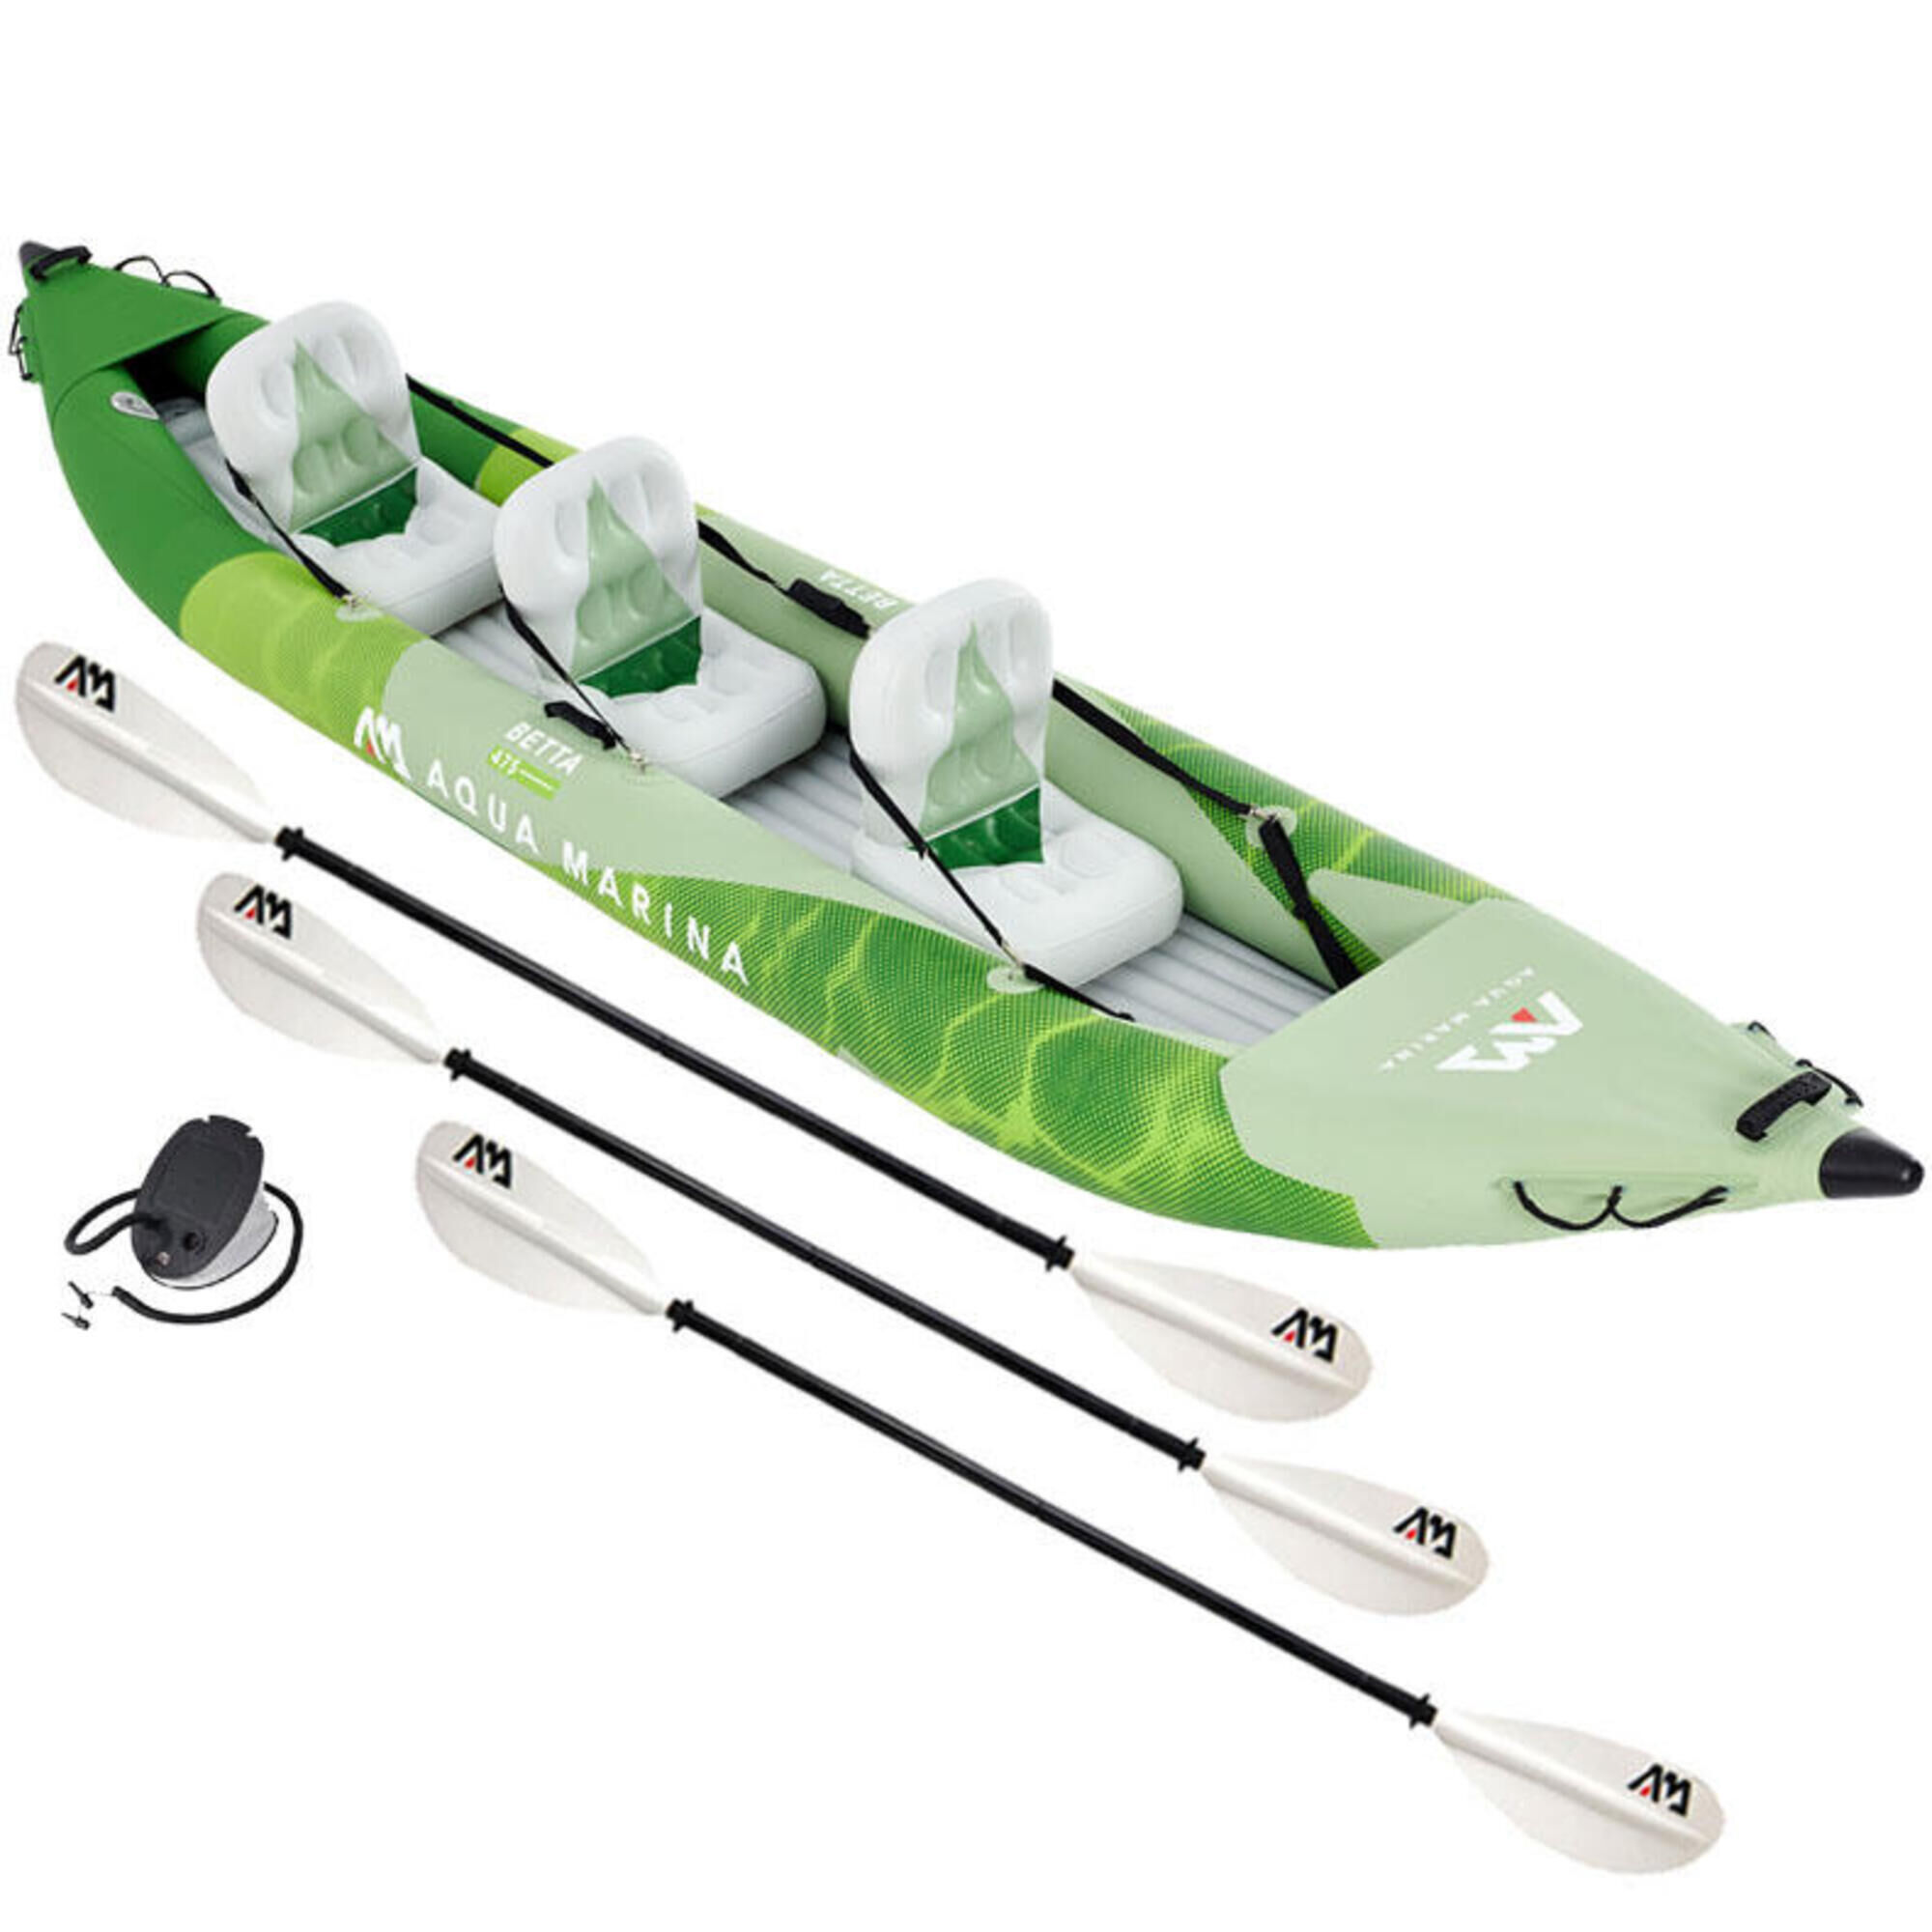 AQUA MARINA Aqua Marina BETTA 475cm 3 Person Inflatable Kayak Complete Package